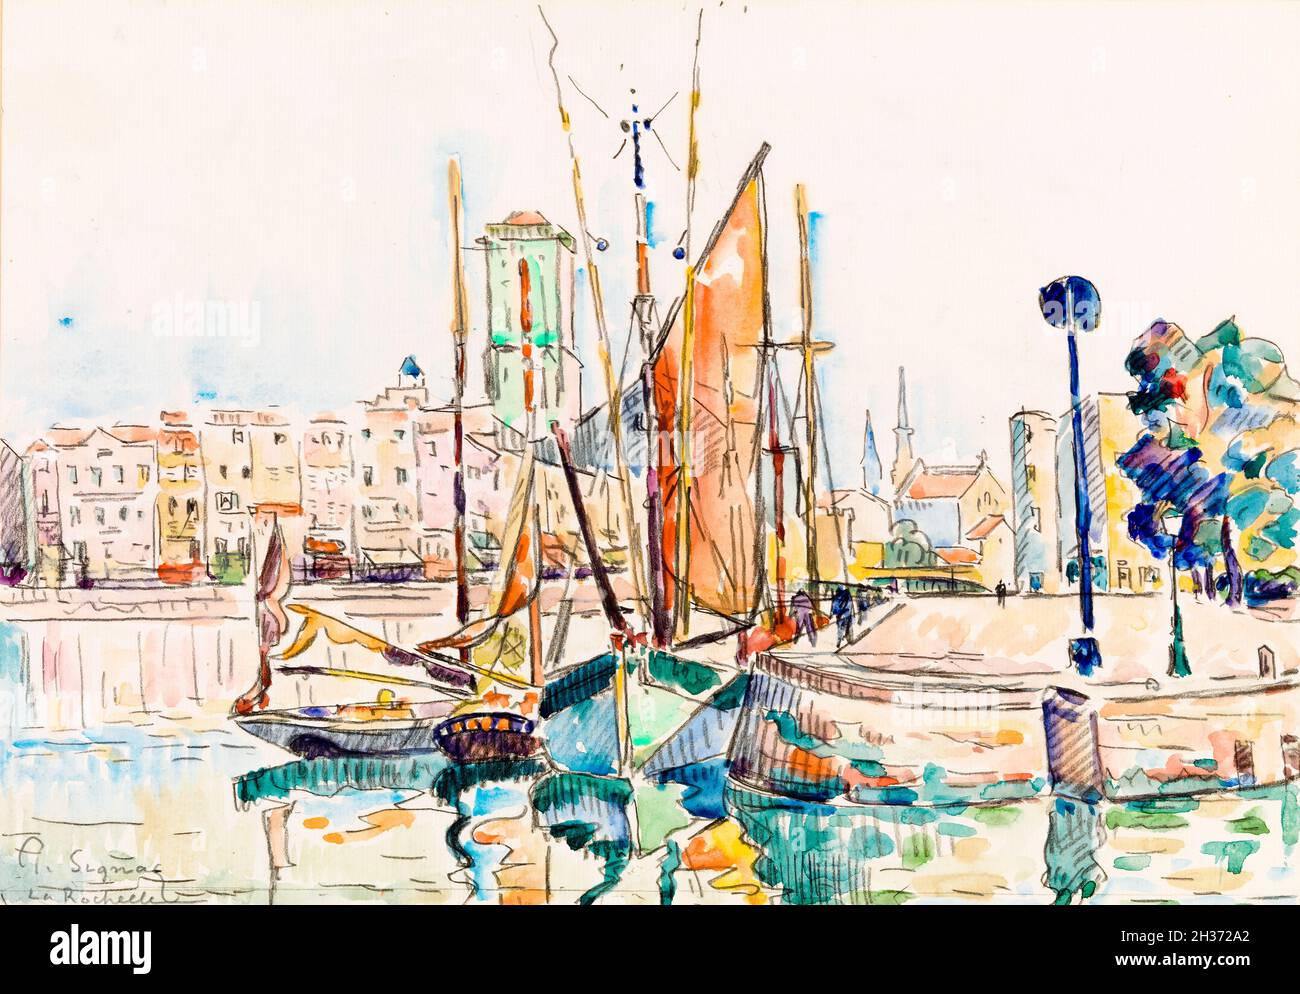 Paul Signac, la Rochelle, peinture de paysage, vers 1911 Banque D'Images